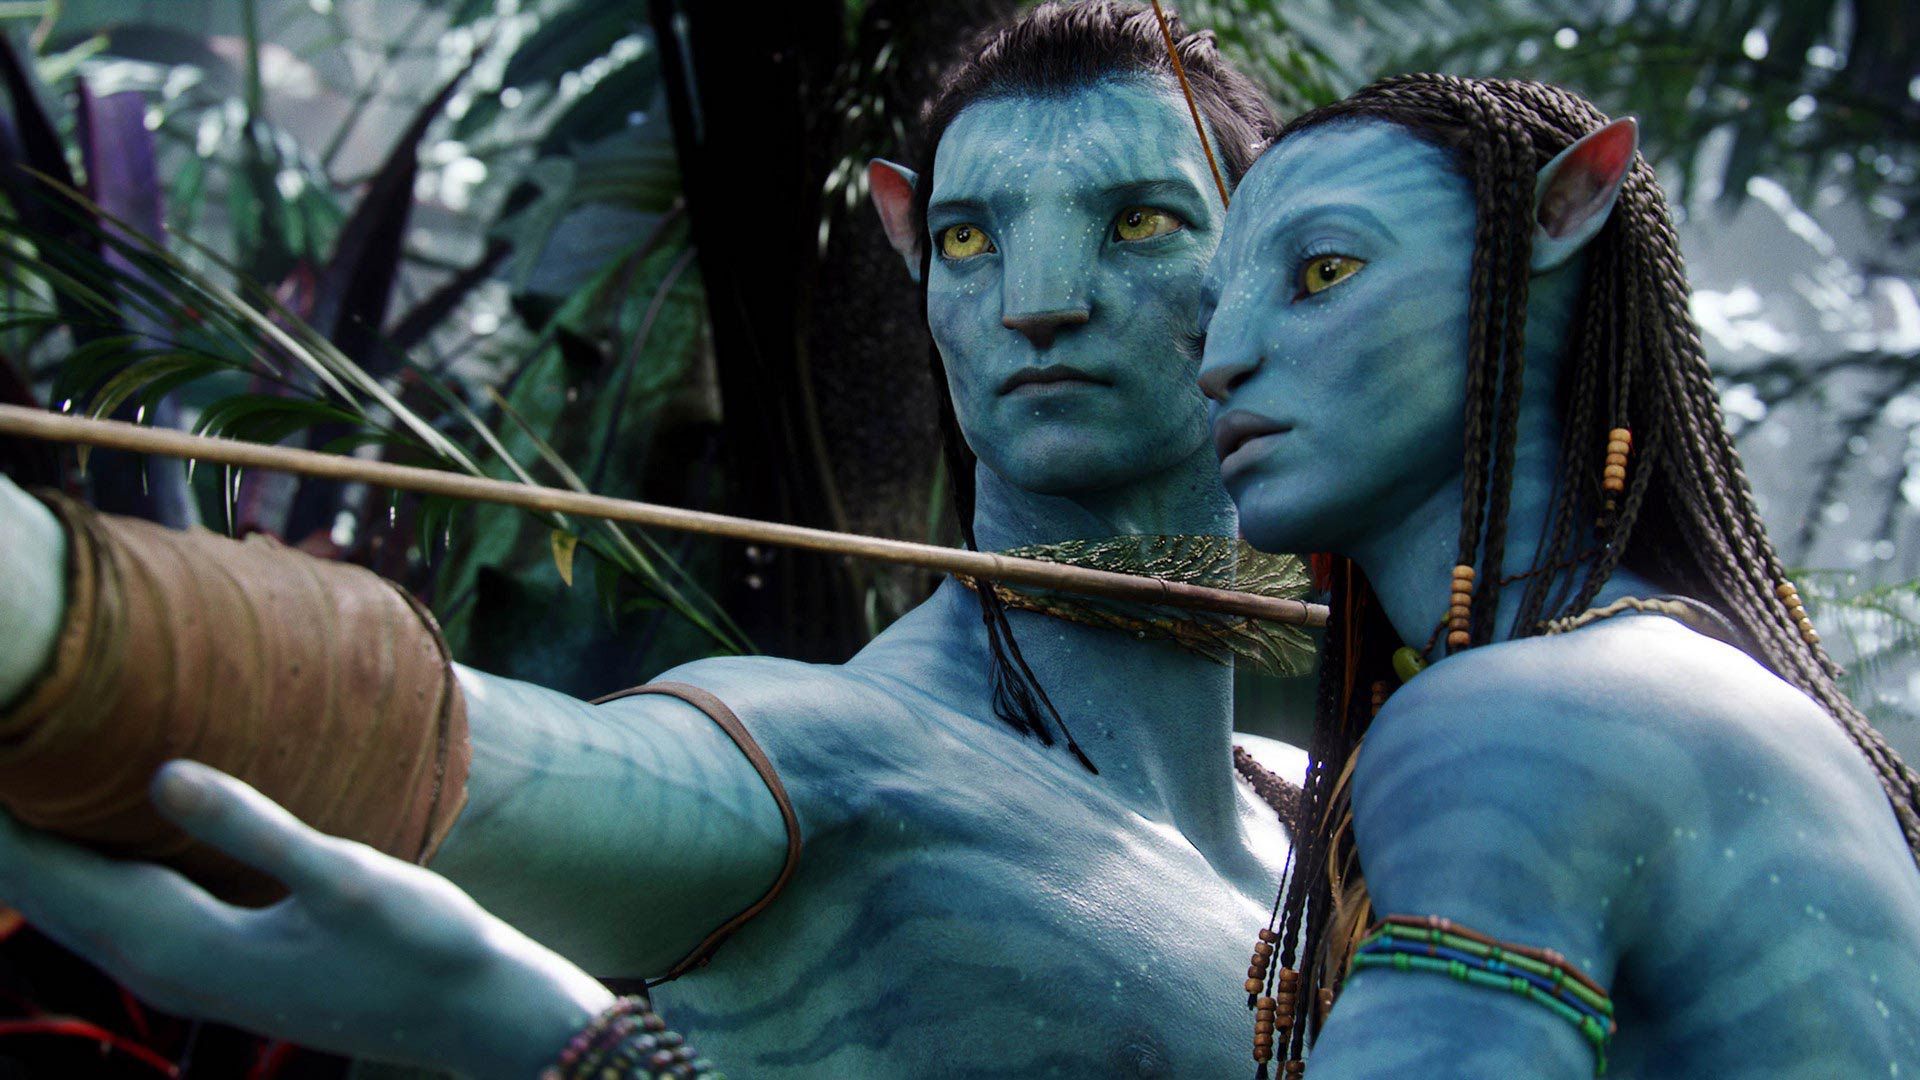 Ator explica retorno de vilão em Avatar 2